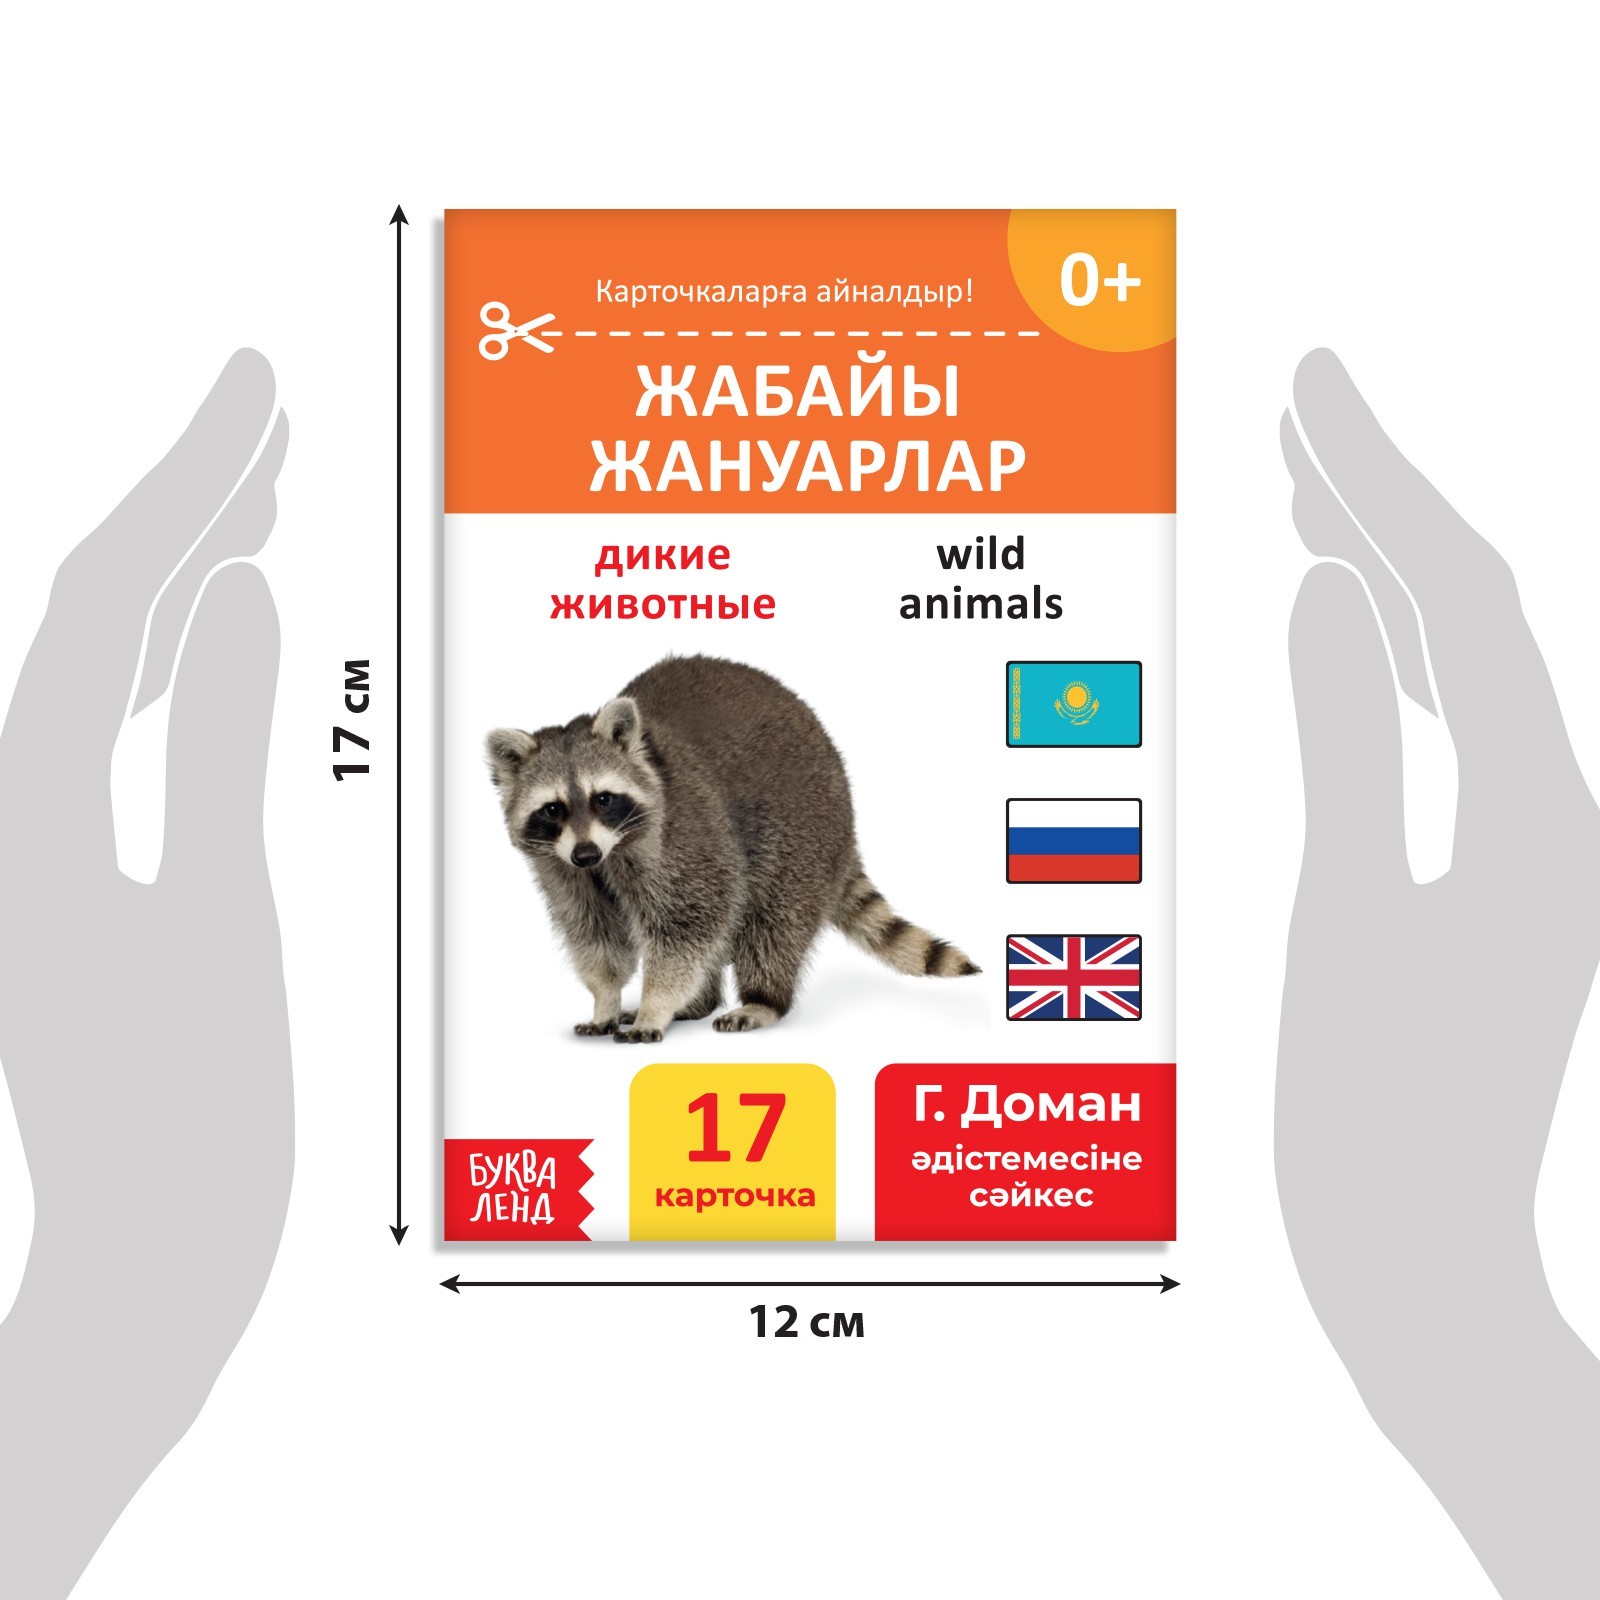 Книга по методике Г. Домана Дикие животные, на казахском языке 9828798 (Вид 2)